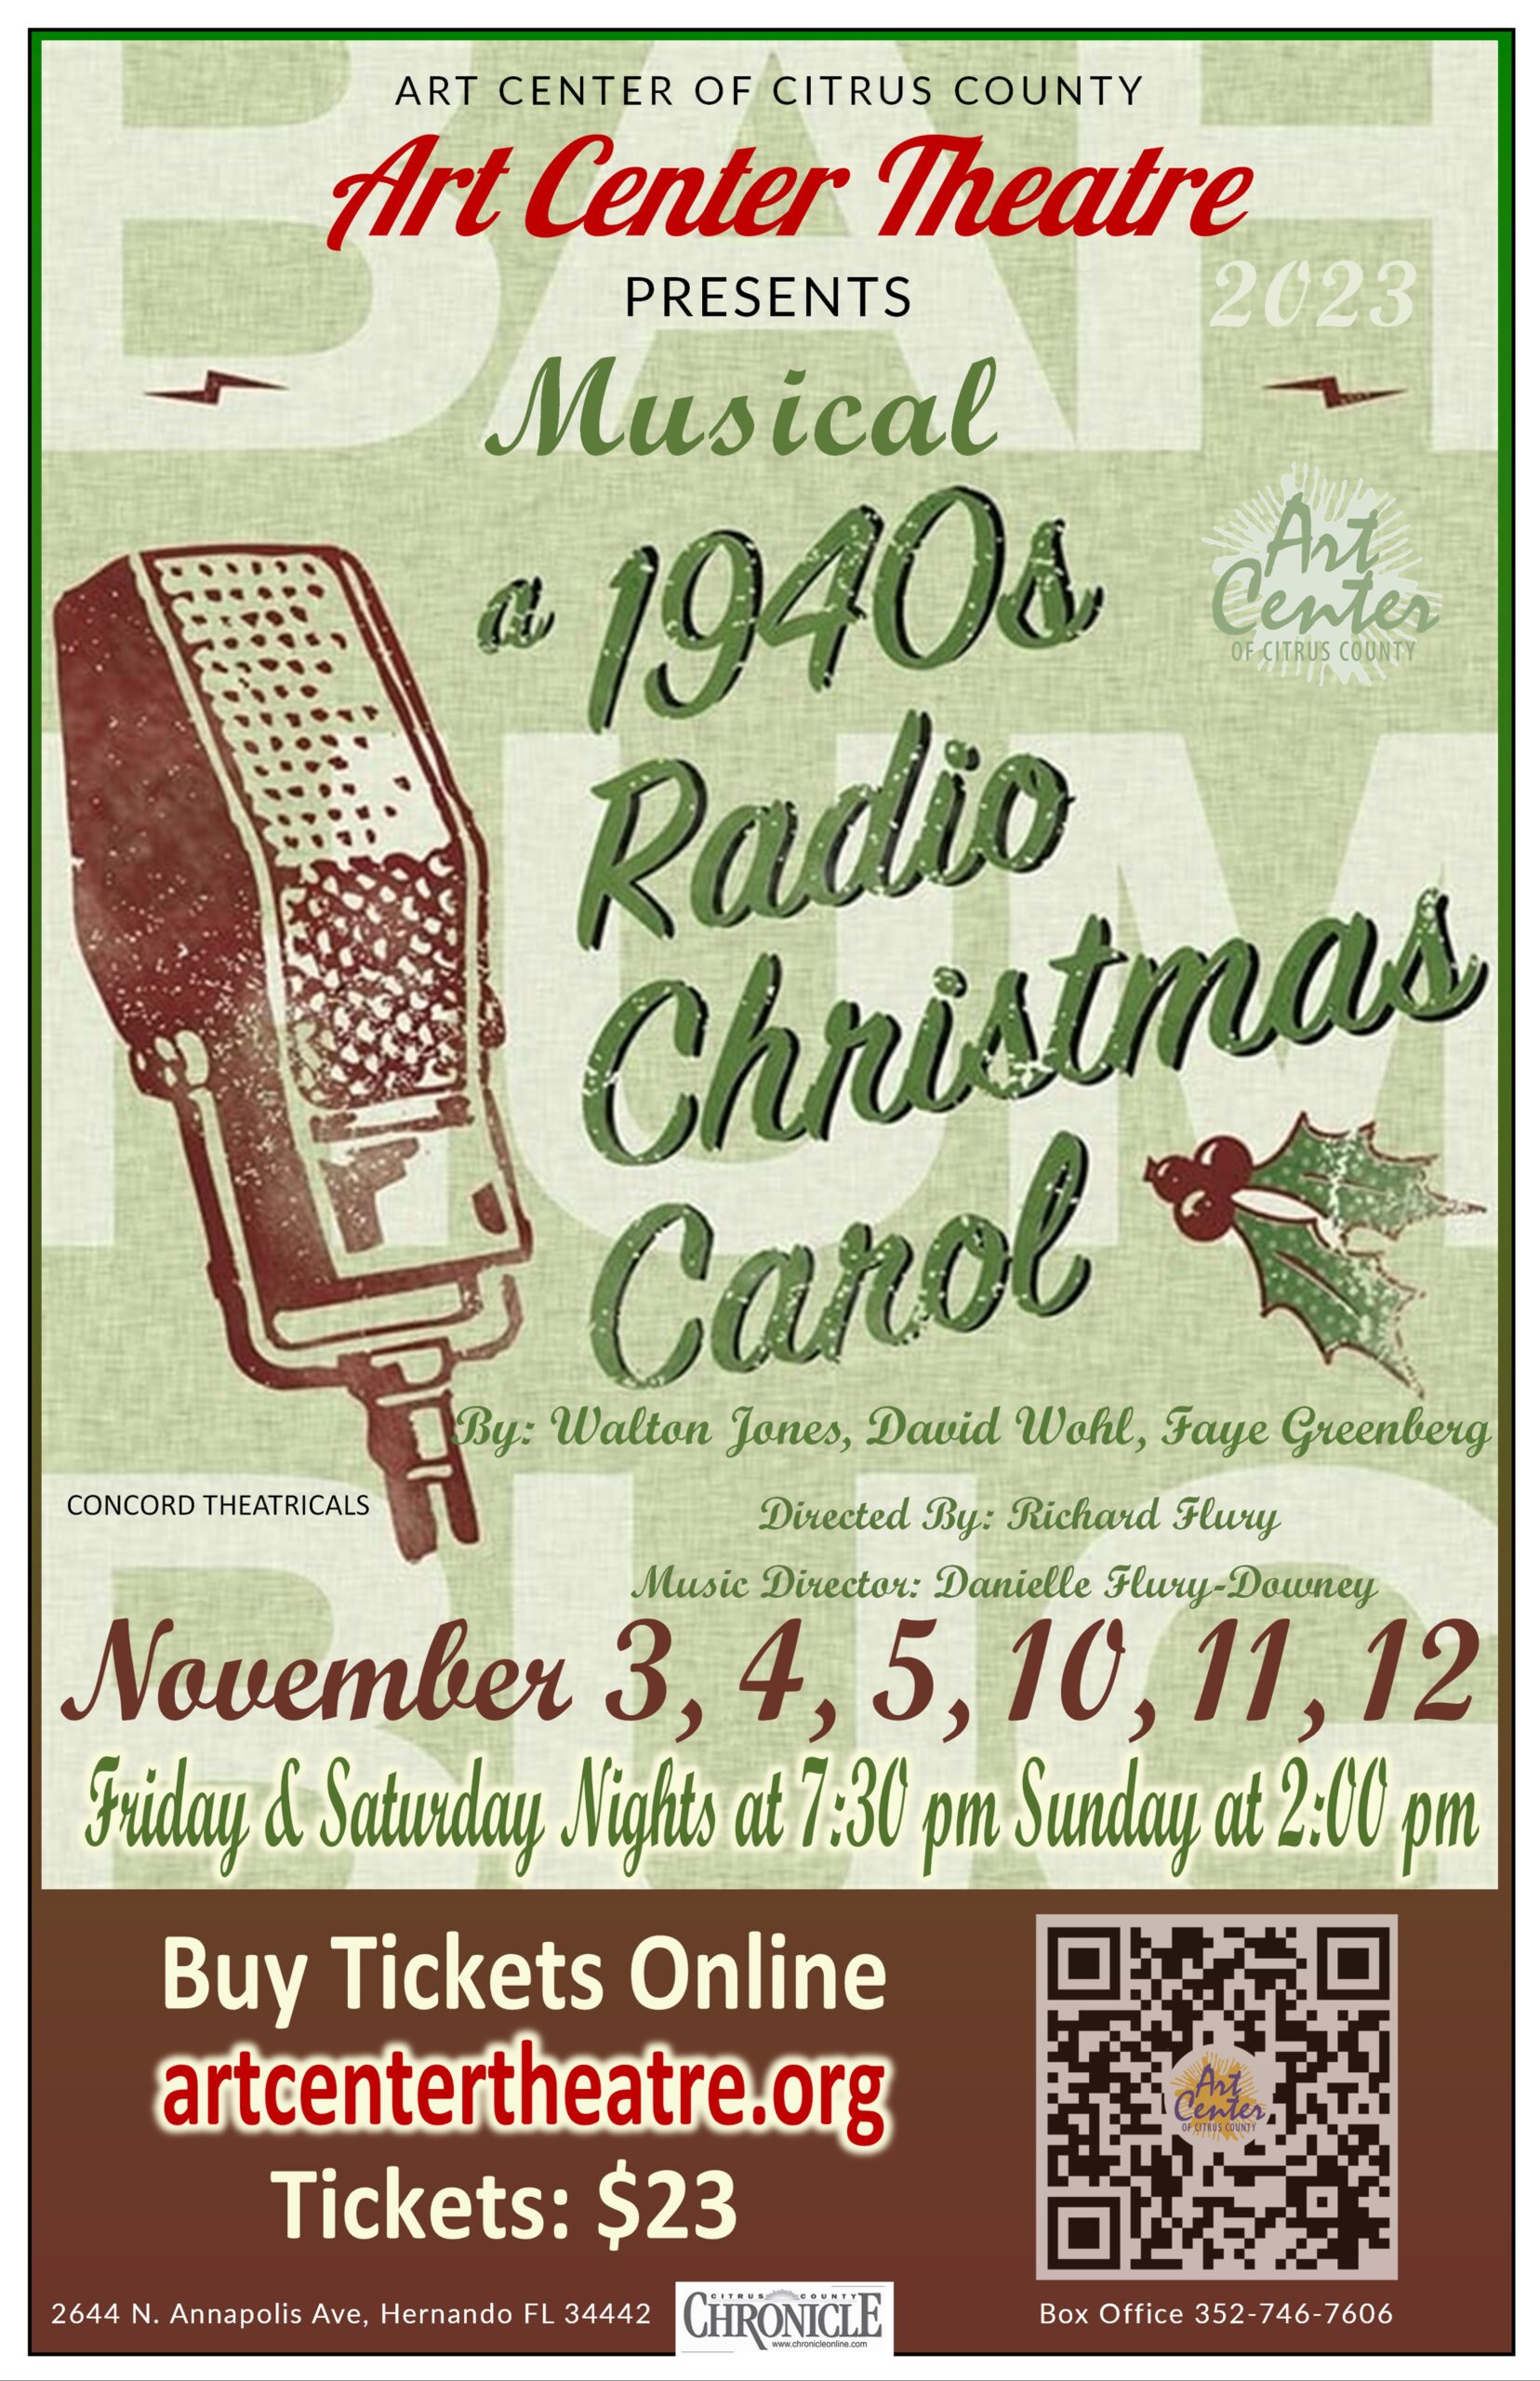 A 1940S RADIO CHRISTMAS CAROL